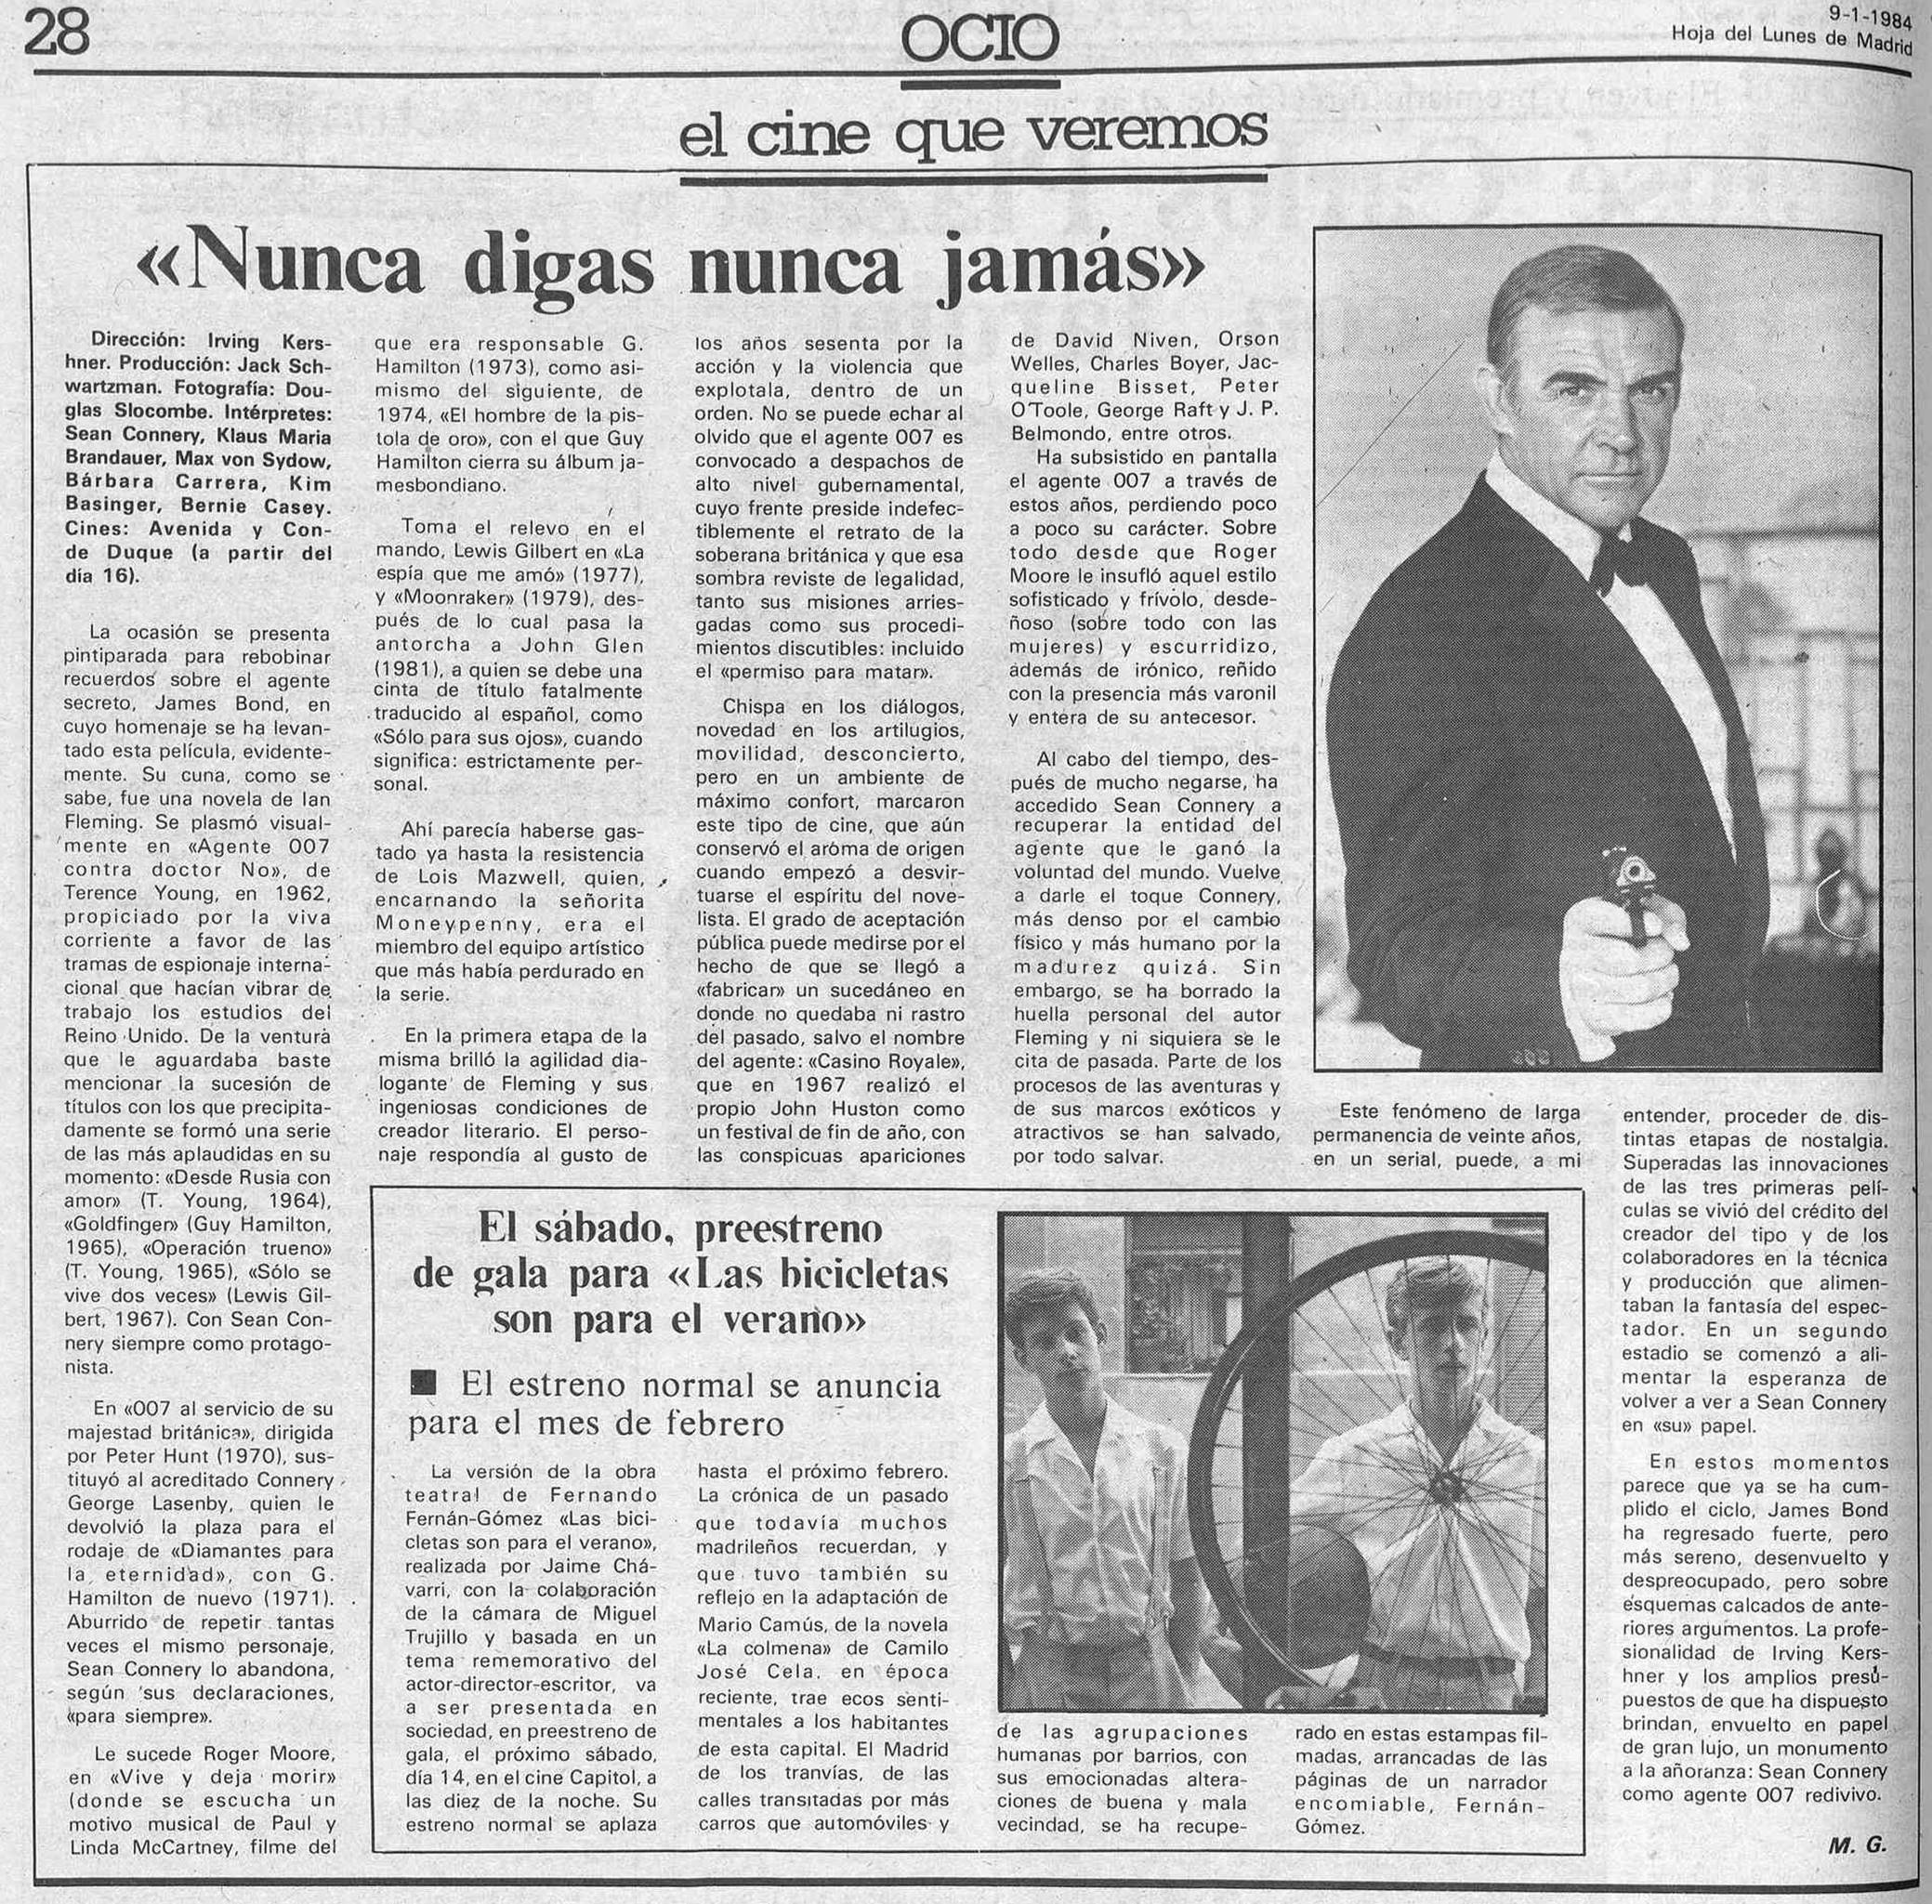 83 NSNA 1984 01 09 Hoja del Lunes de Madrid Critica